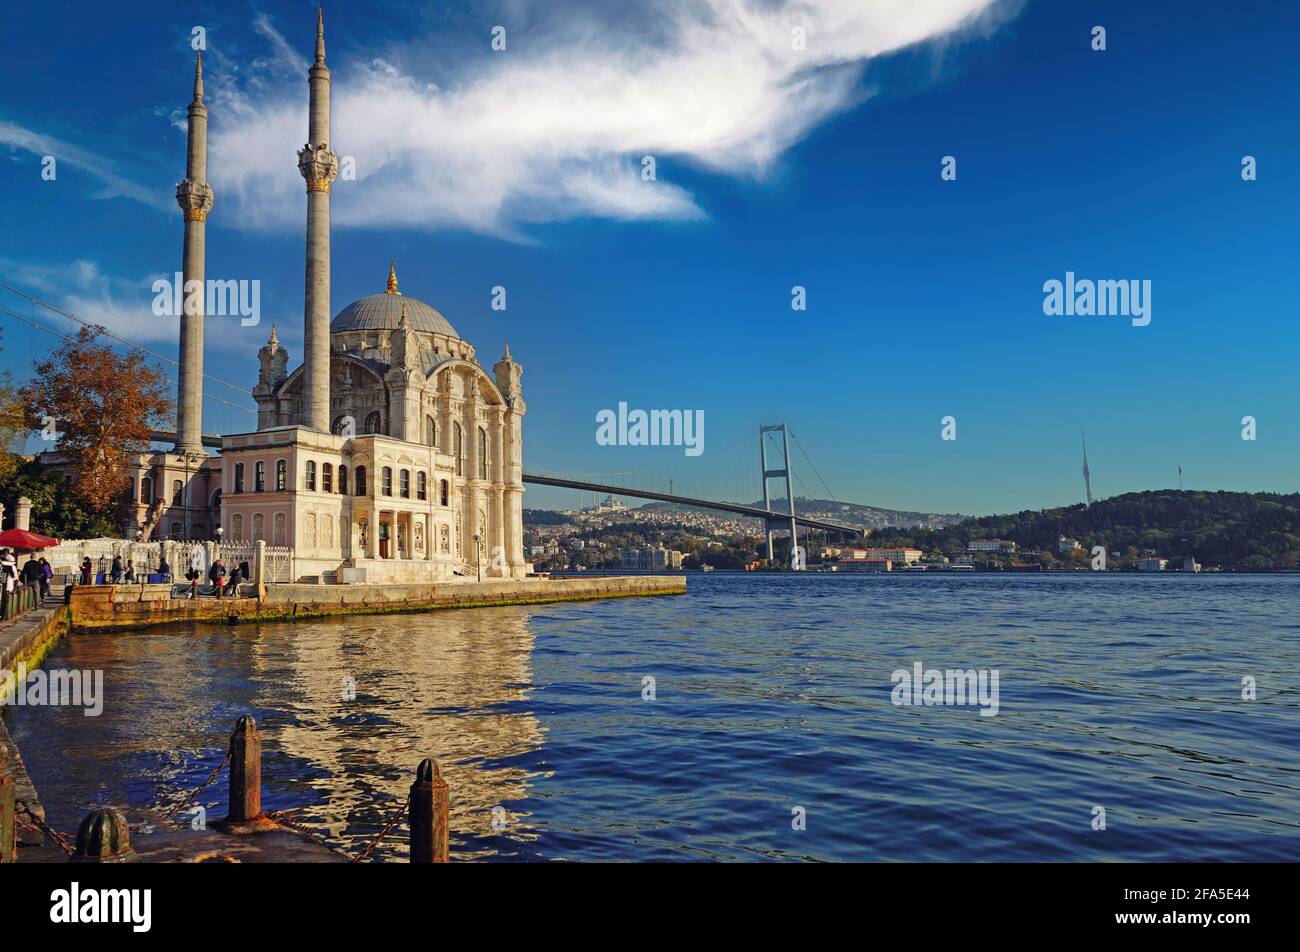 La moschea di Ortaköy, conosciuta dal pubblico, è una moschea in stile neo-barocco. Foto Stock